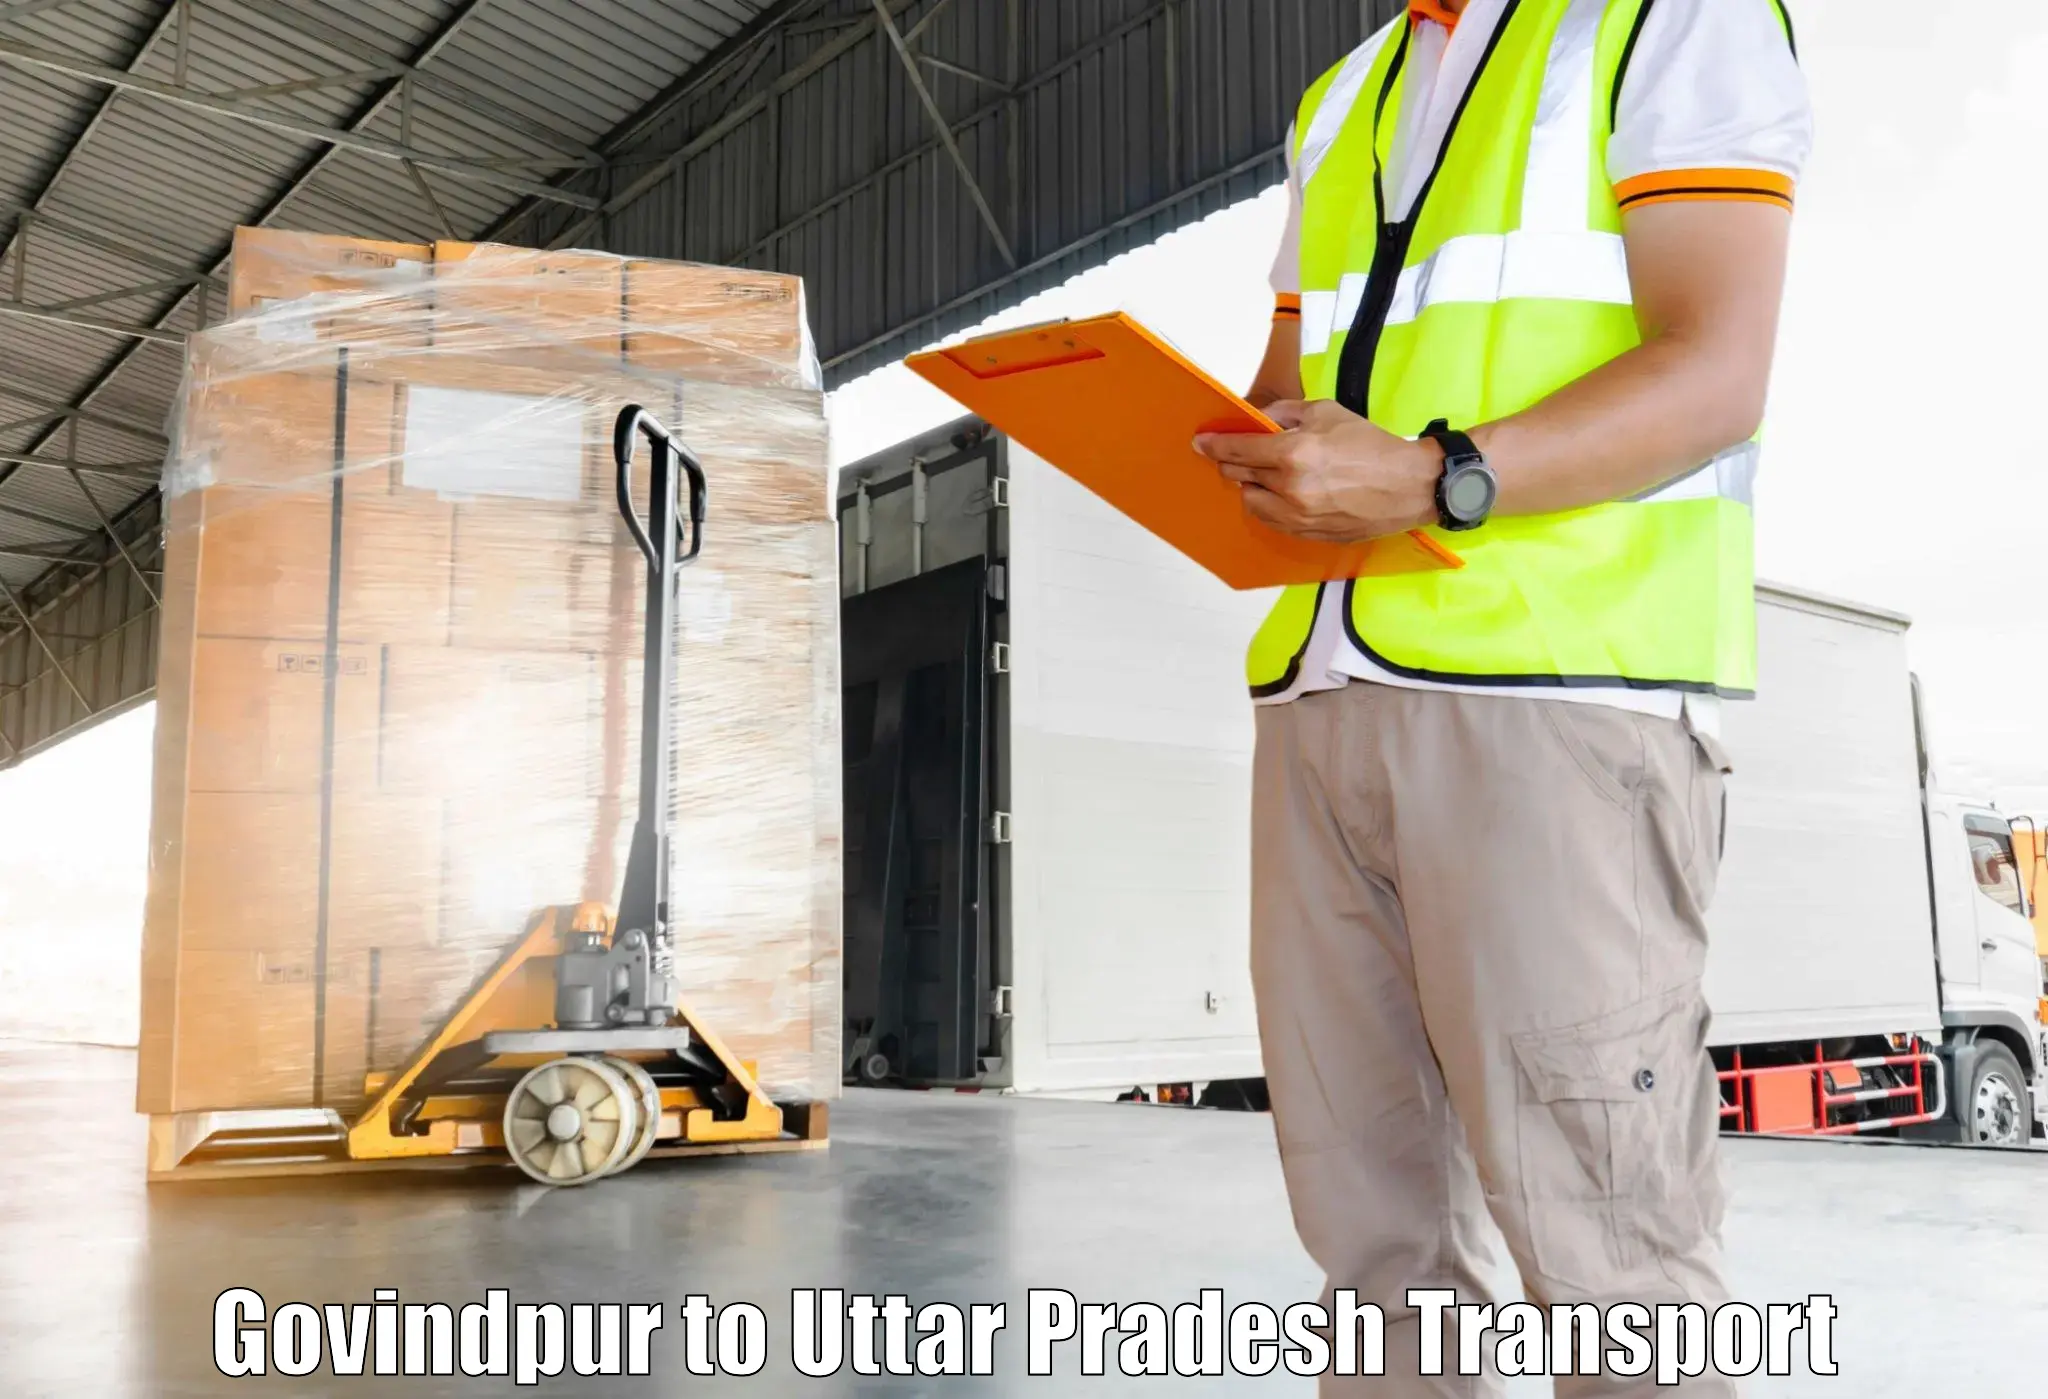 Commercial transport service Govindpur to Noida